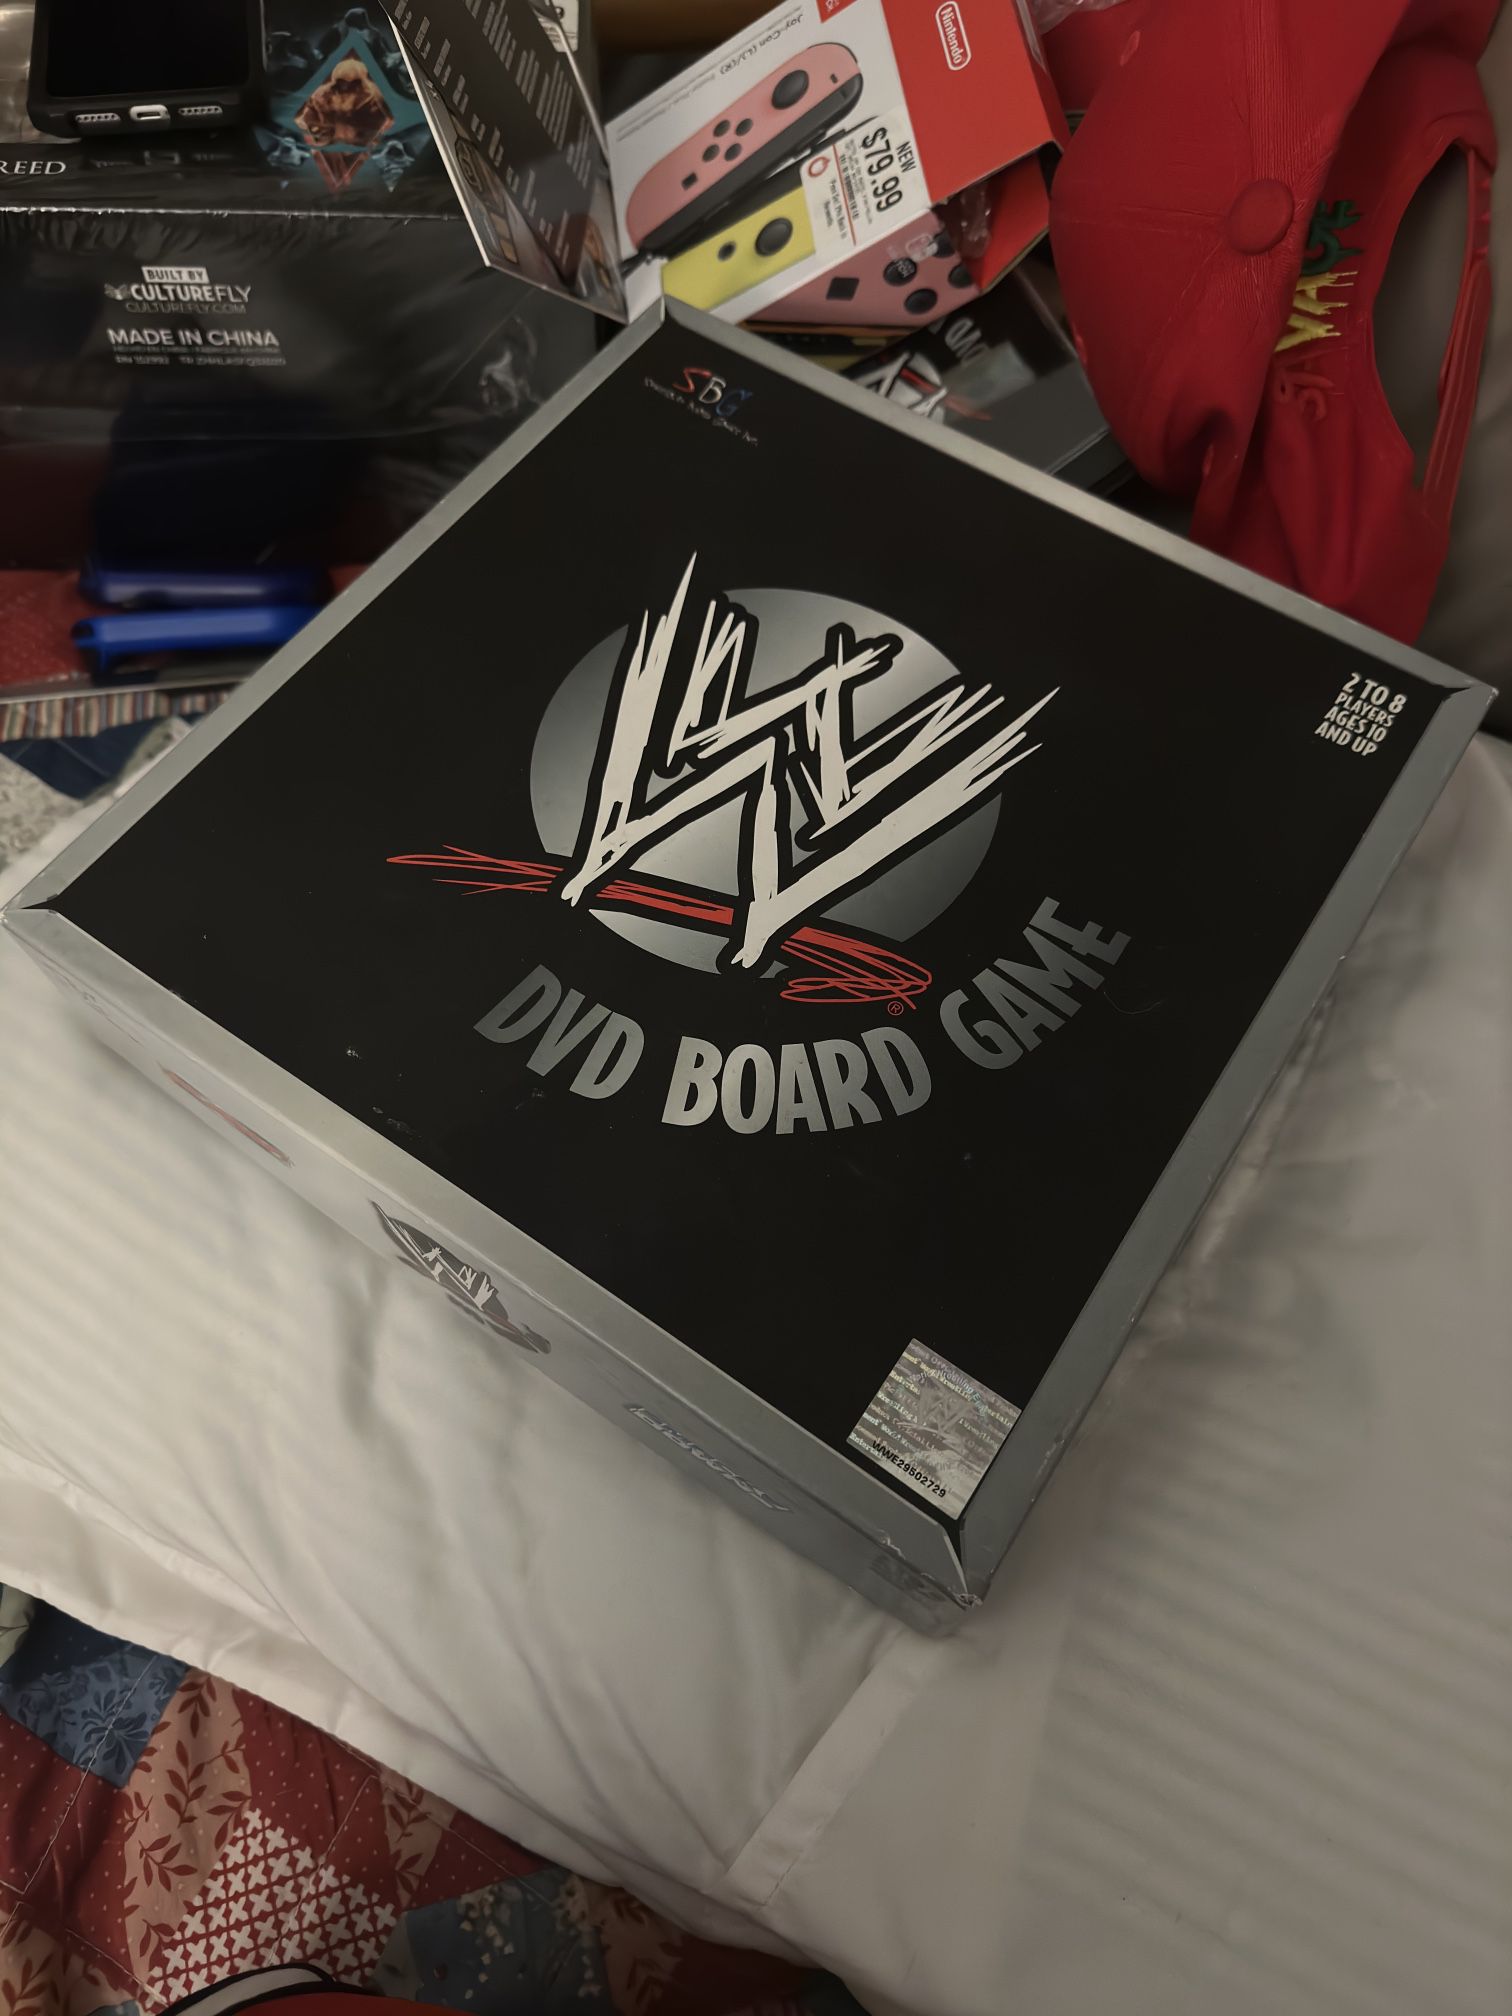 2005 WWE DVD Board Game  